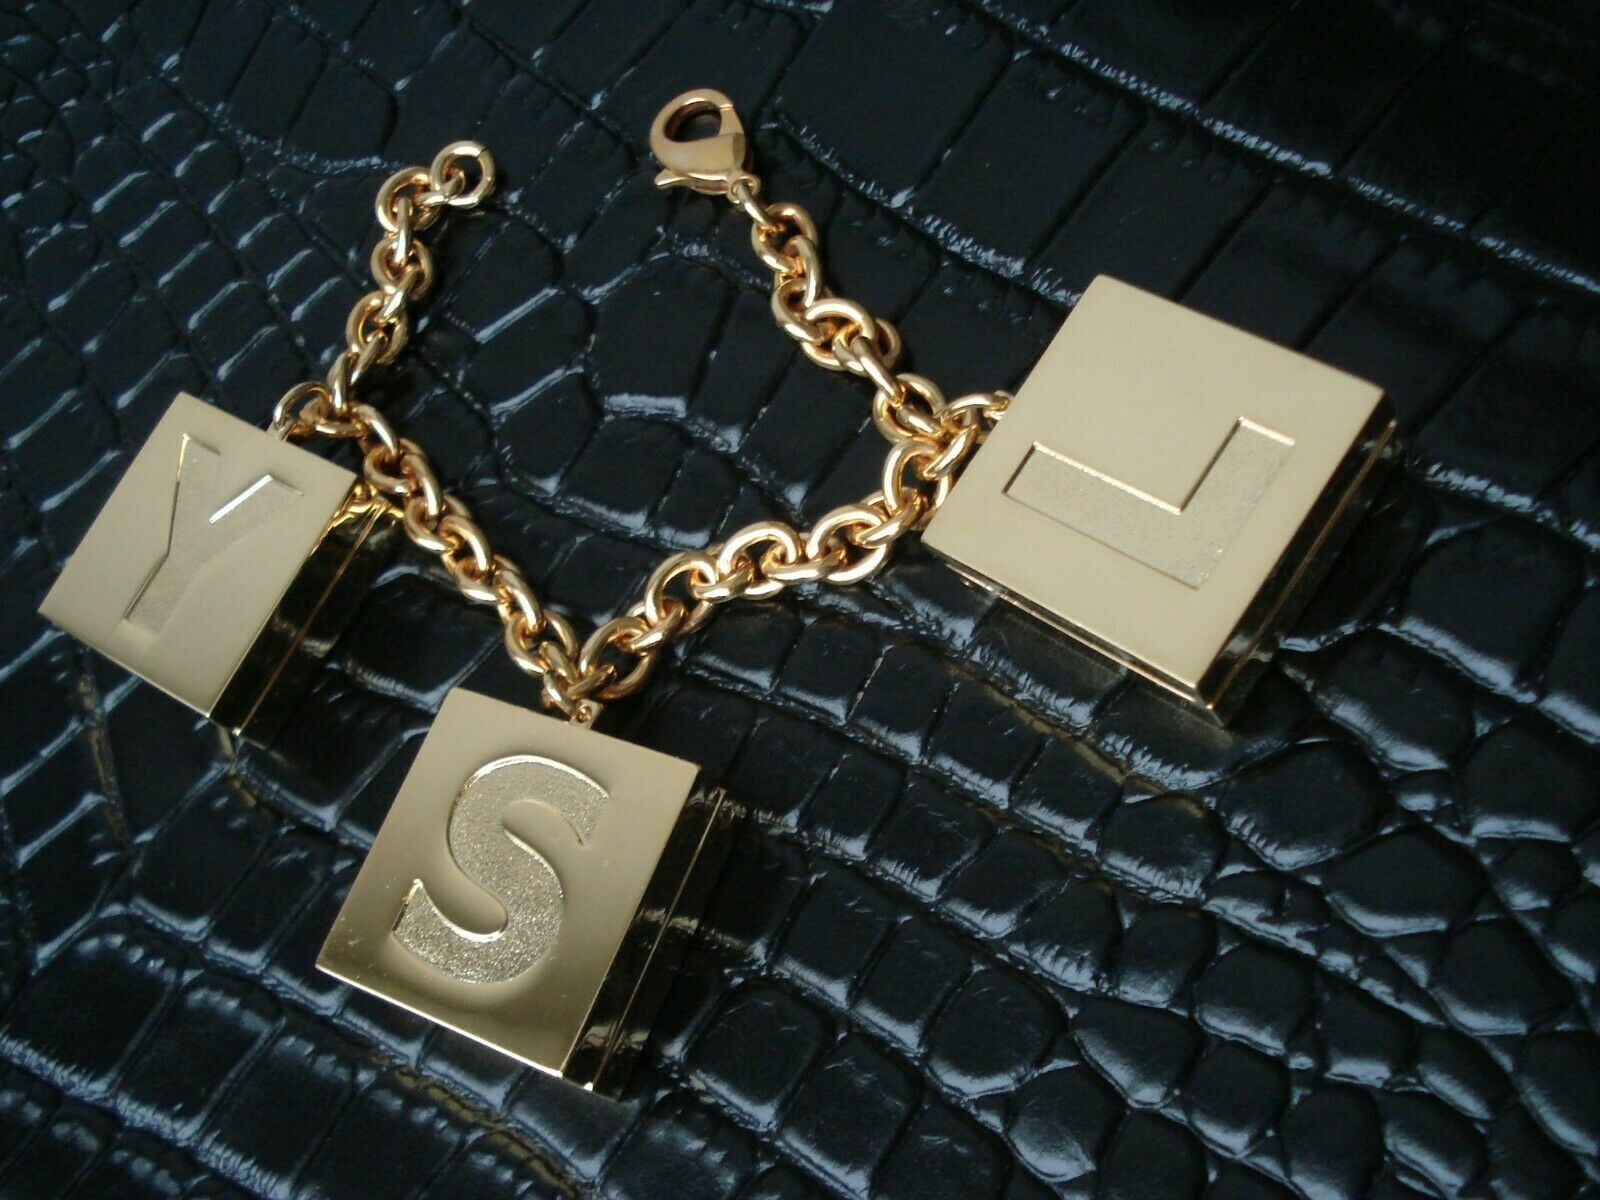 YSL Yves Saint Laurent charm bracelet pendant vintage gold color Authentic